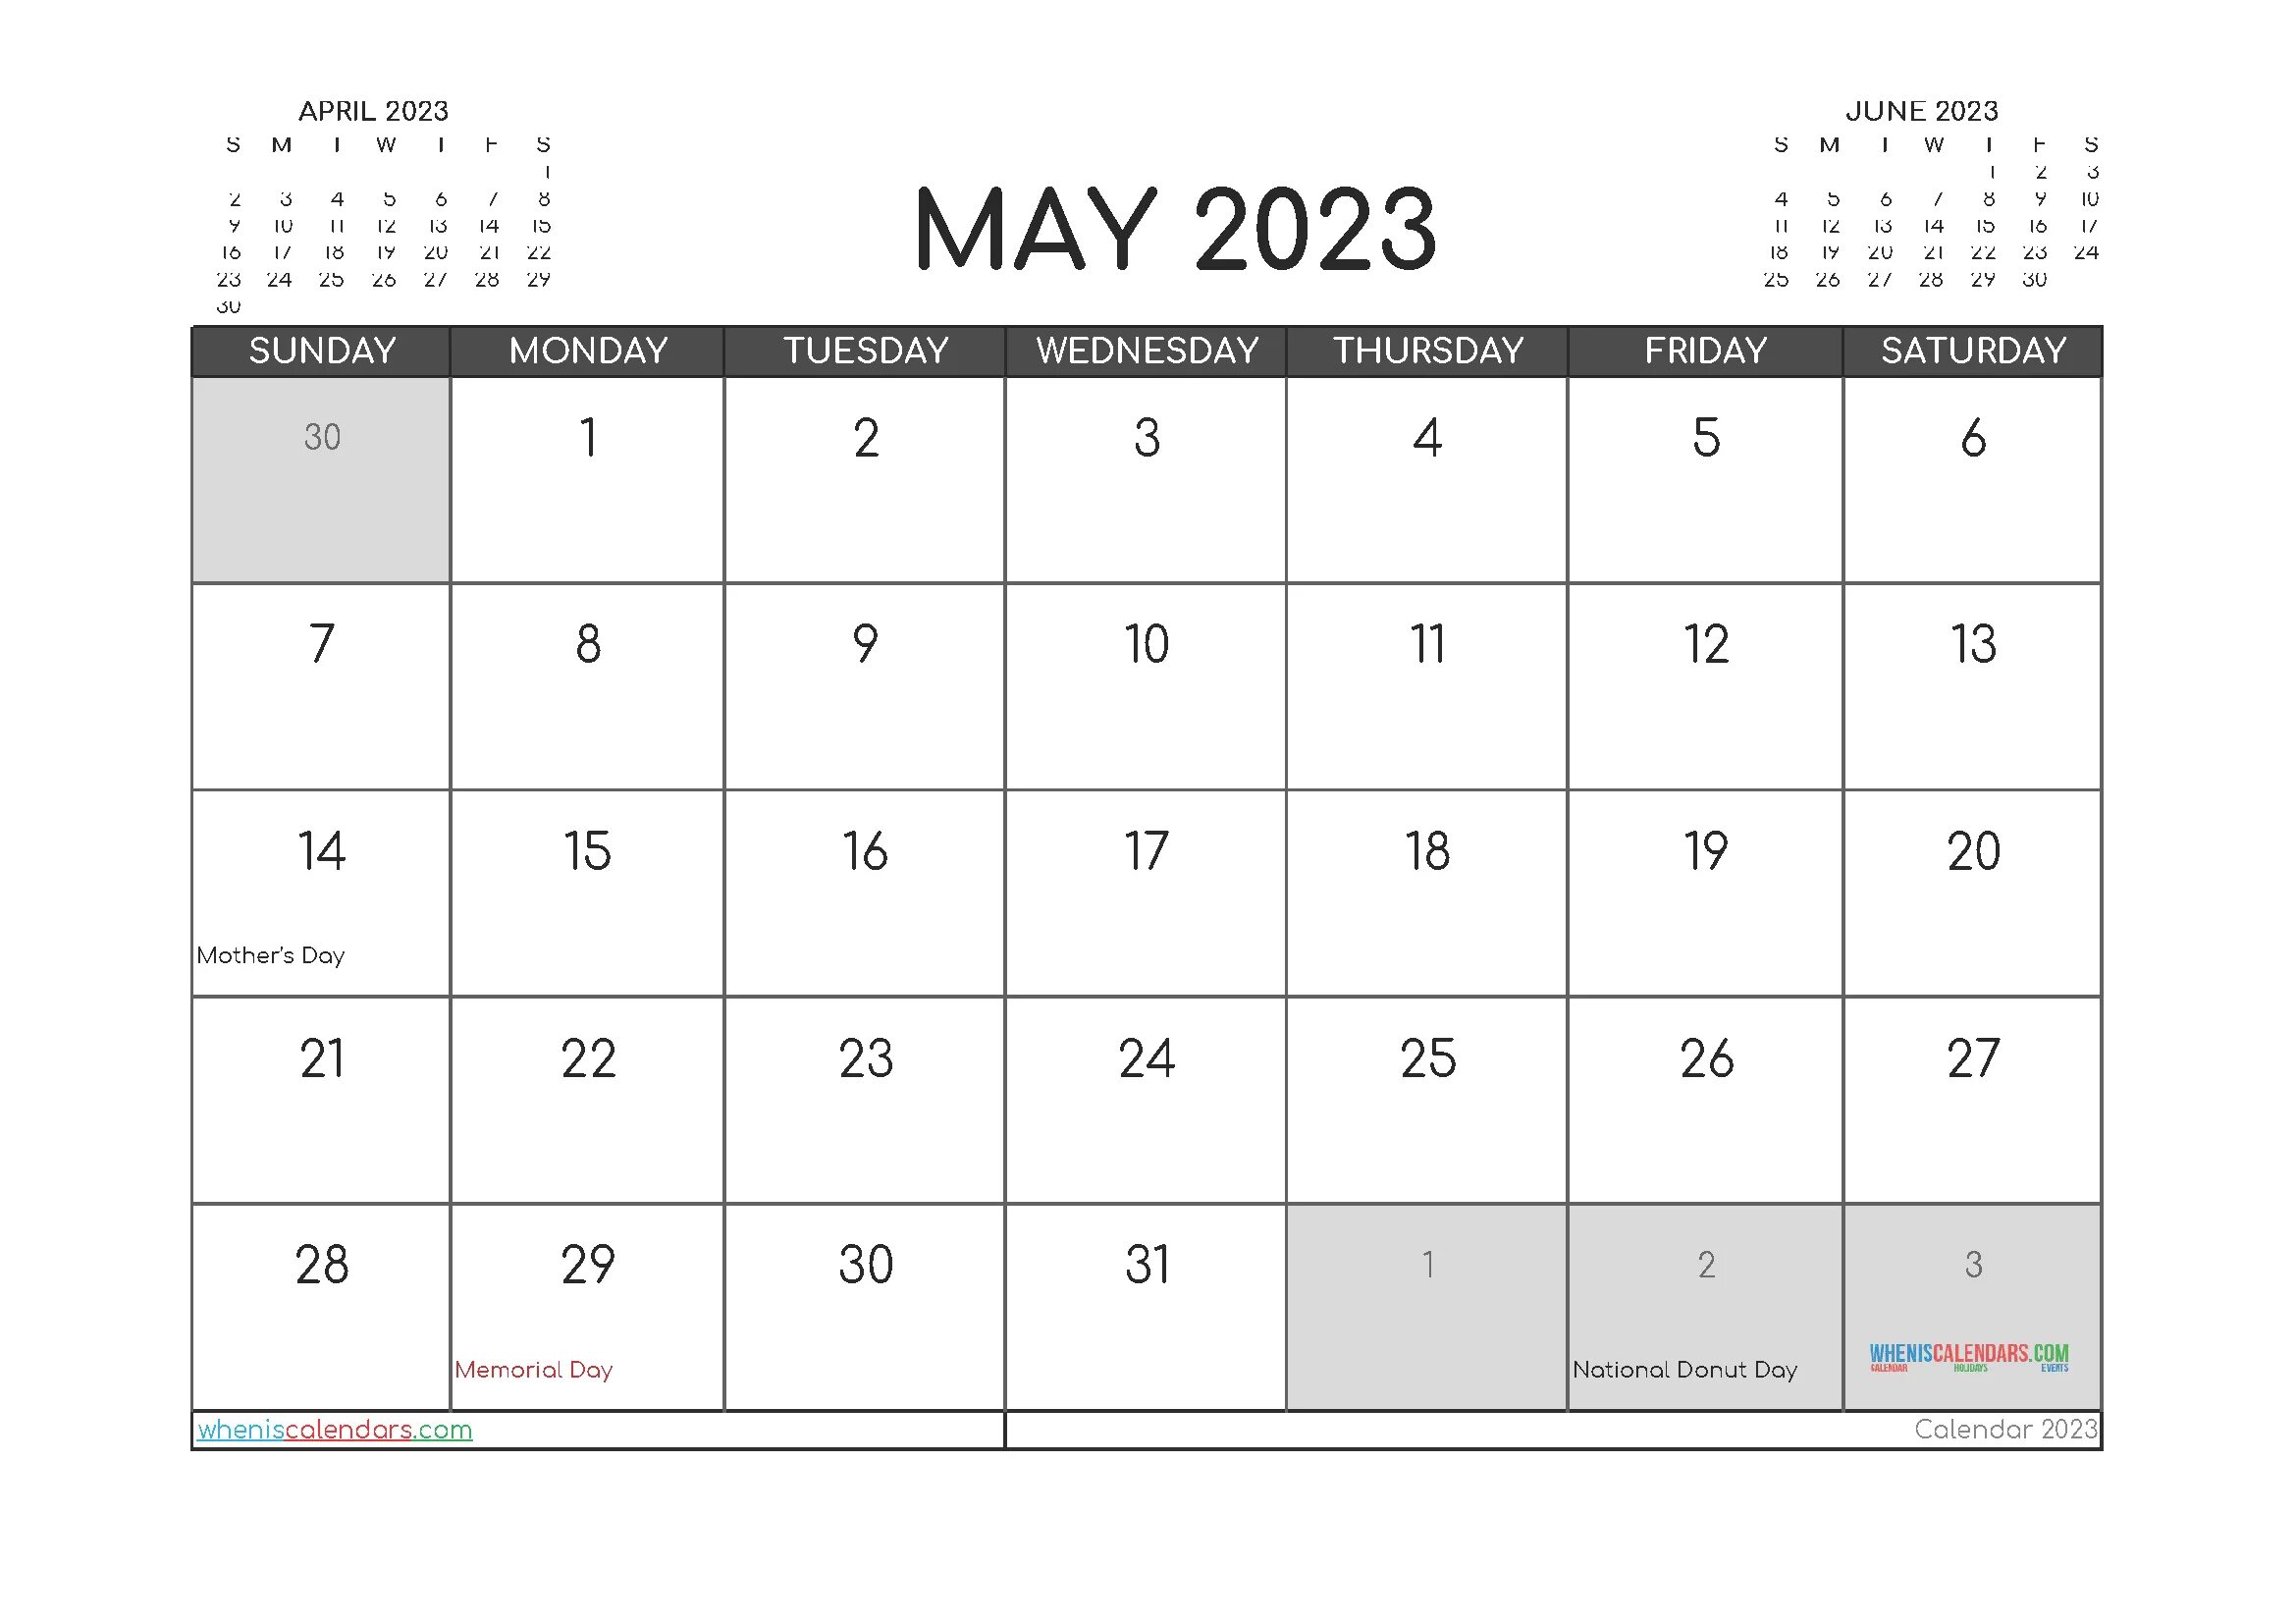 Календарь на ноябрь 2023 года. Сетка календаря на 2023 год. Кален 2023. Календарь на декабрь 2023 года. Май 2023 производственный